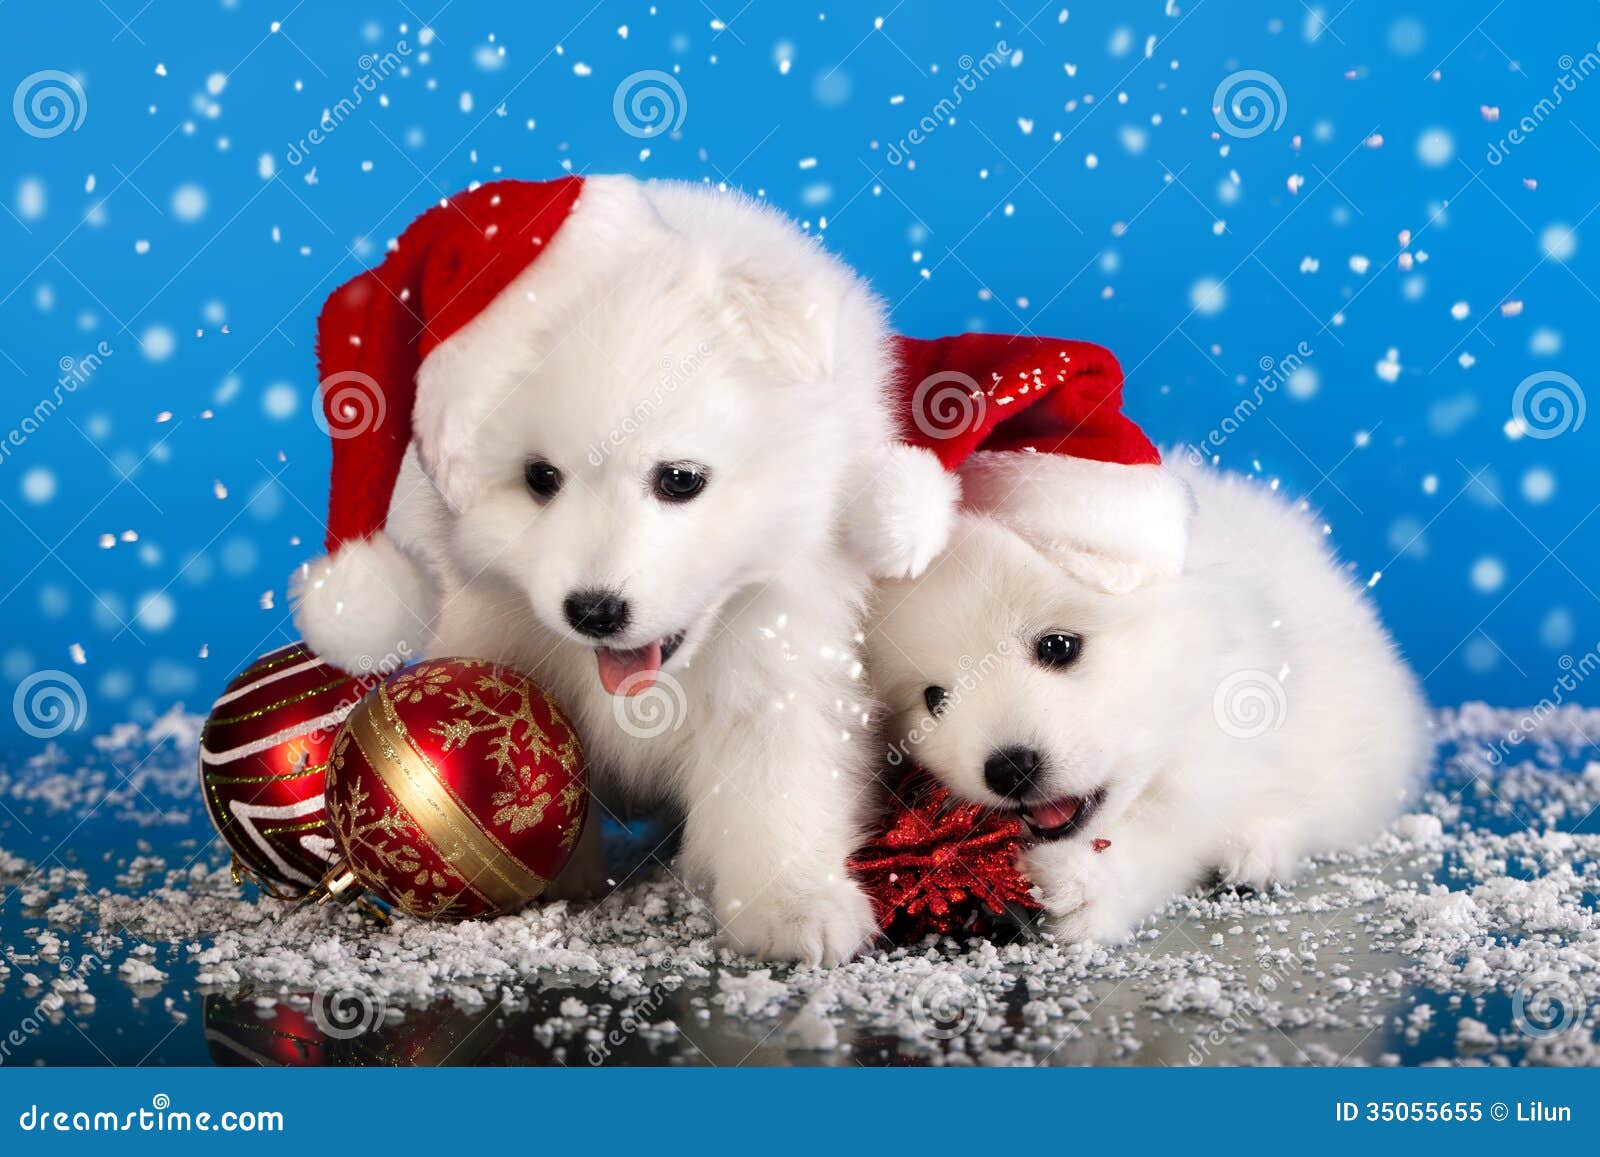 Compartir 61+ imagen perritos de navidad